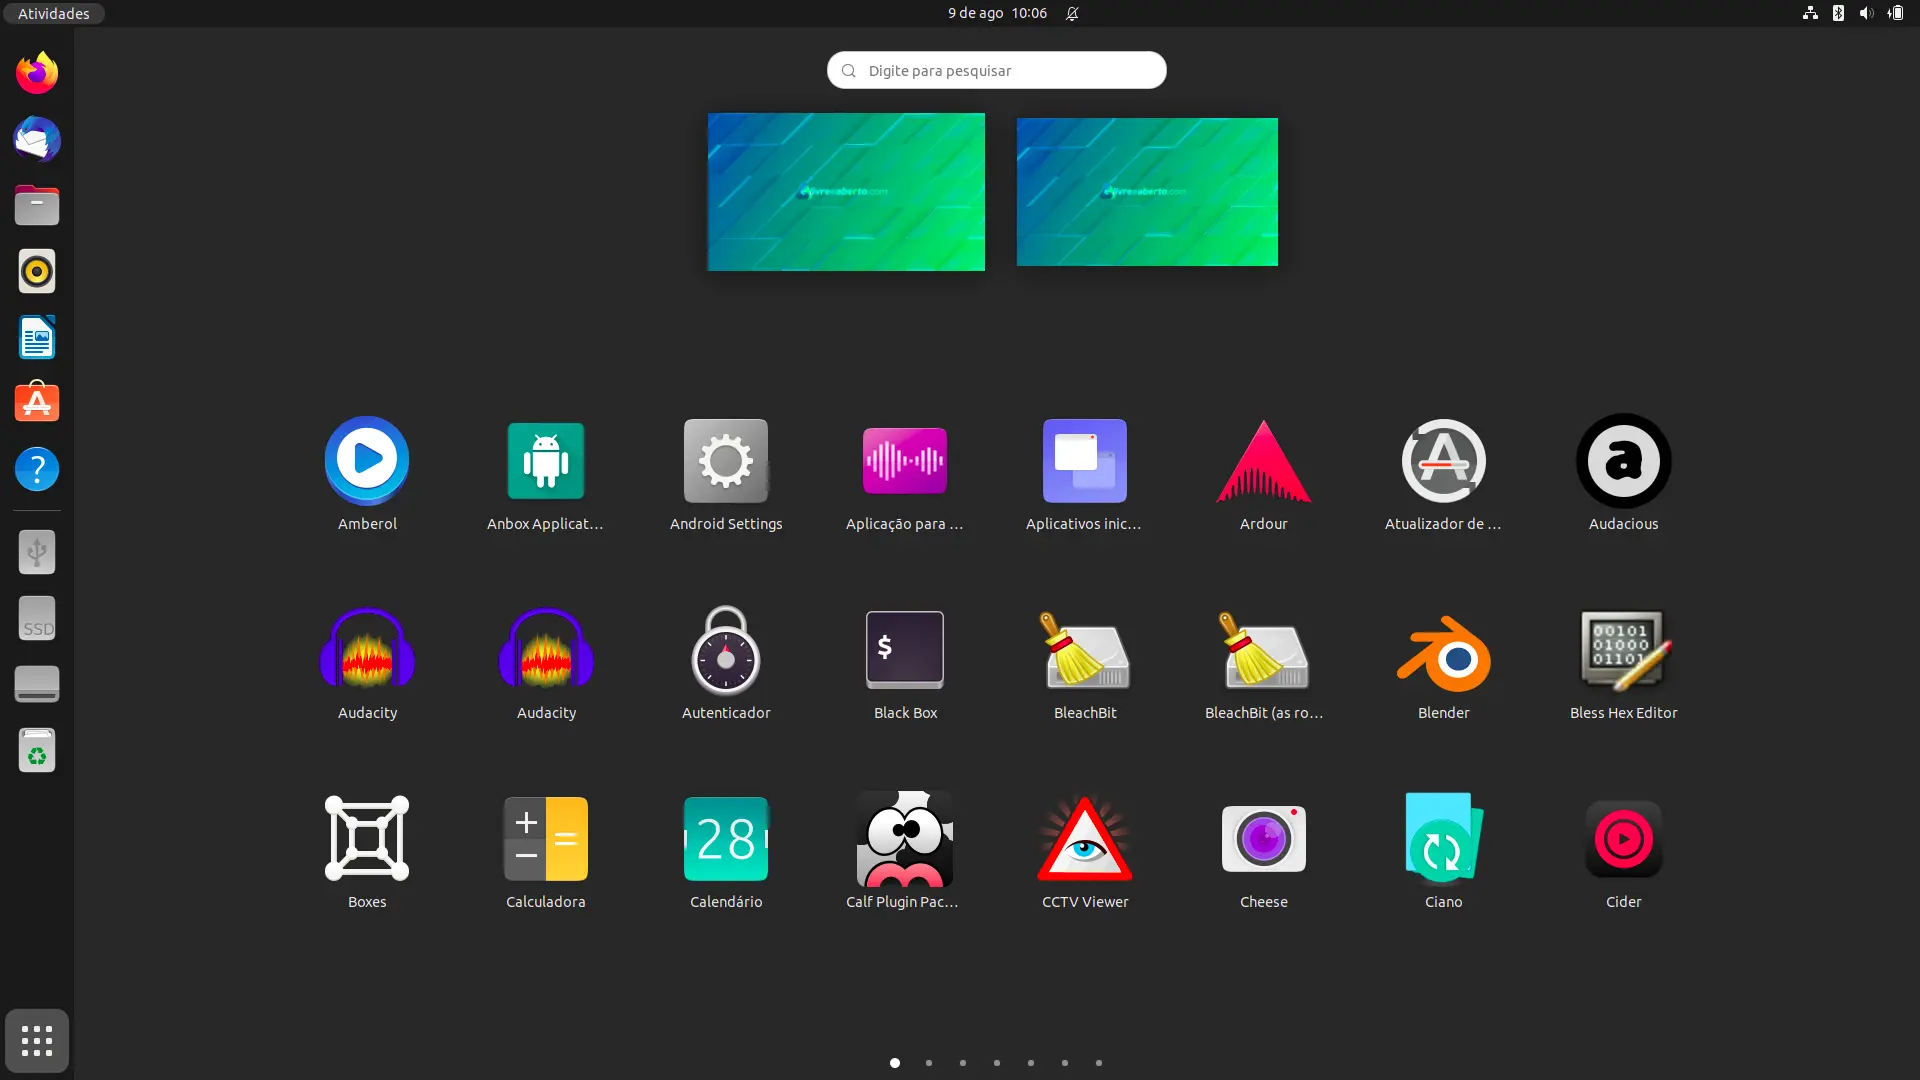 Reorganizando apps em ordem alfabética no GNOME